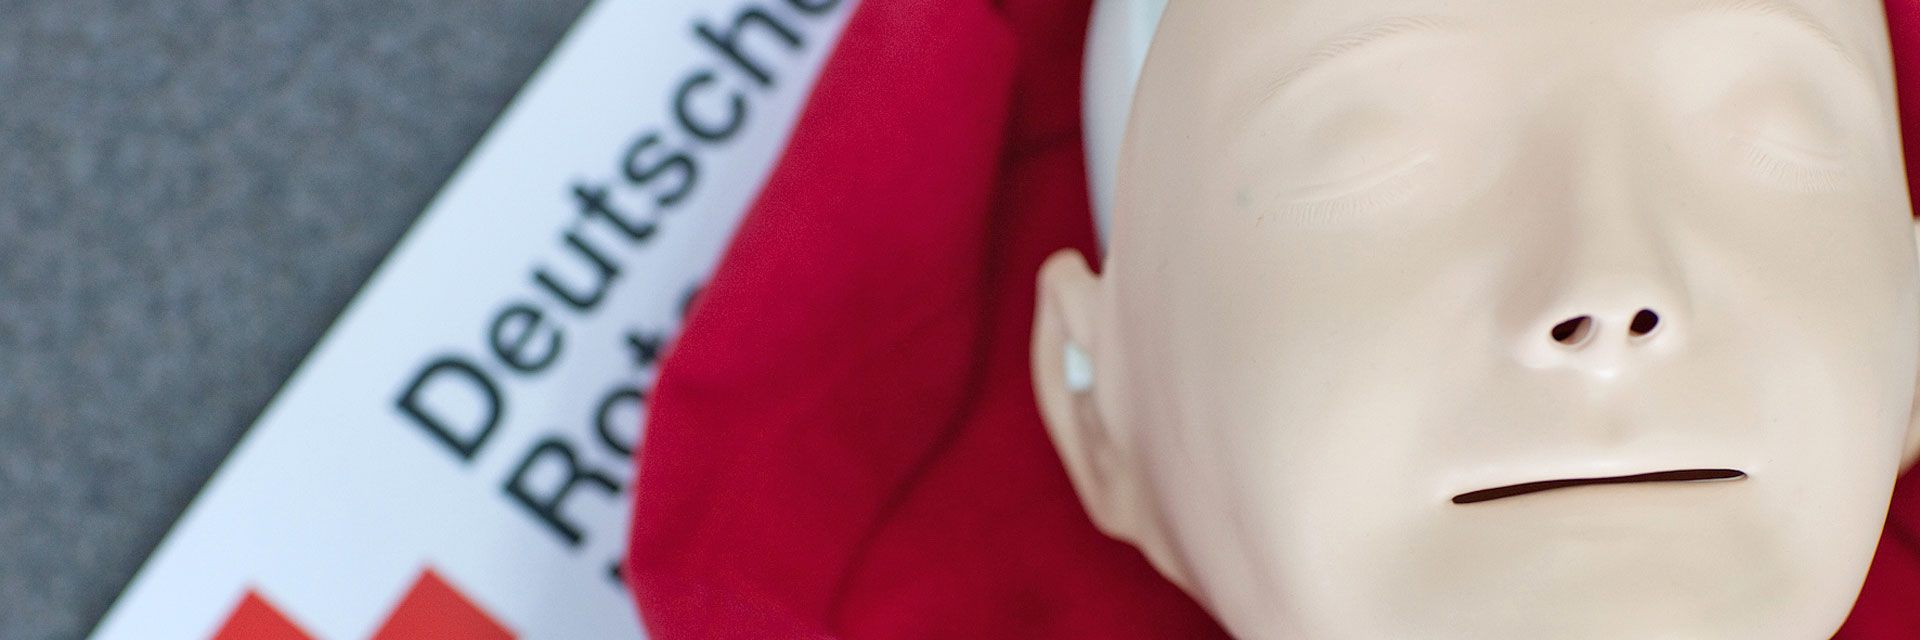 Foto: Eine Übungspuppe liegt auf einer roten Decke. Daneben liegt ein Banner des Deutschen Roten Kreuzes.